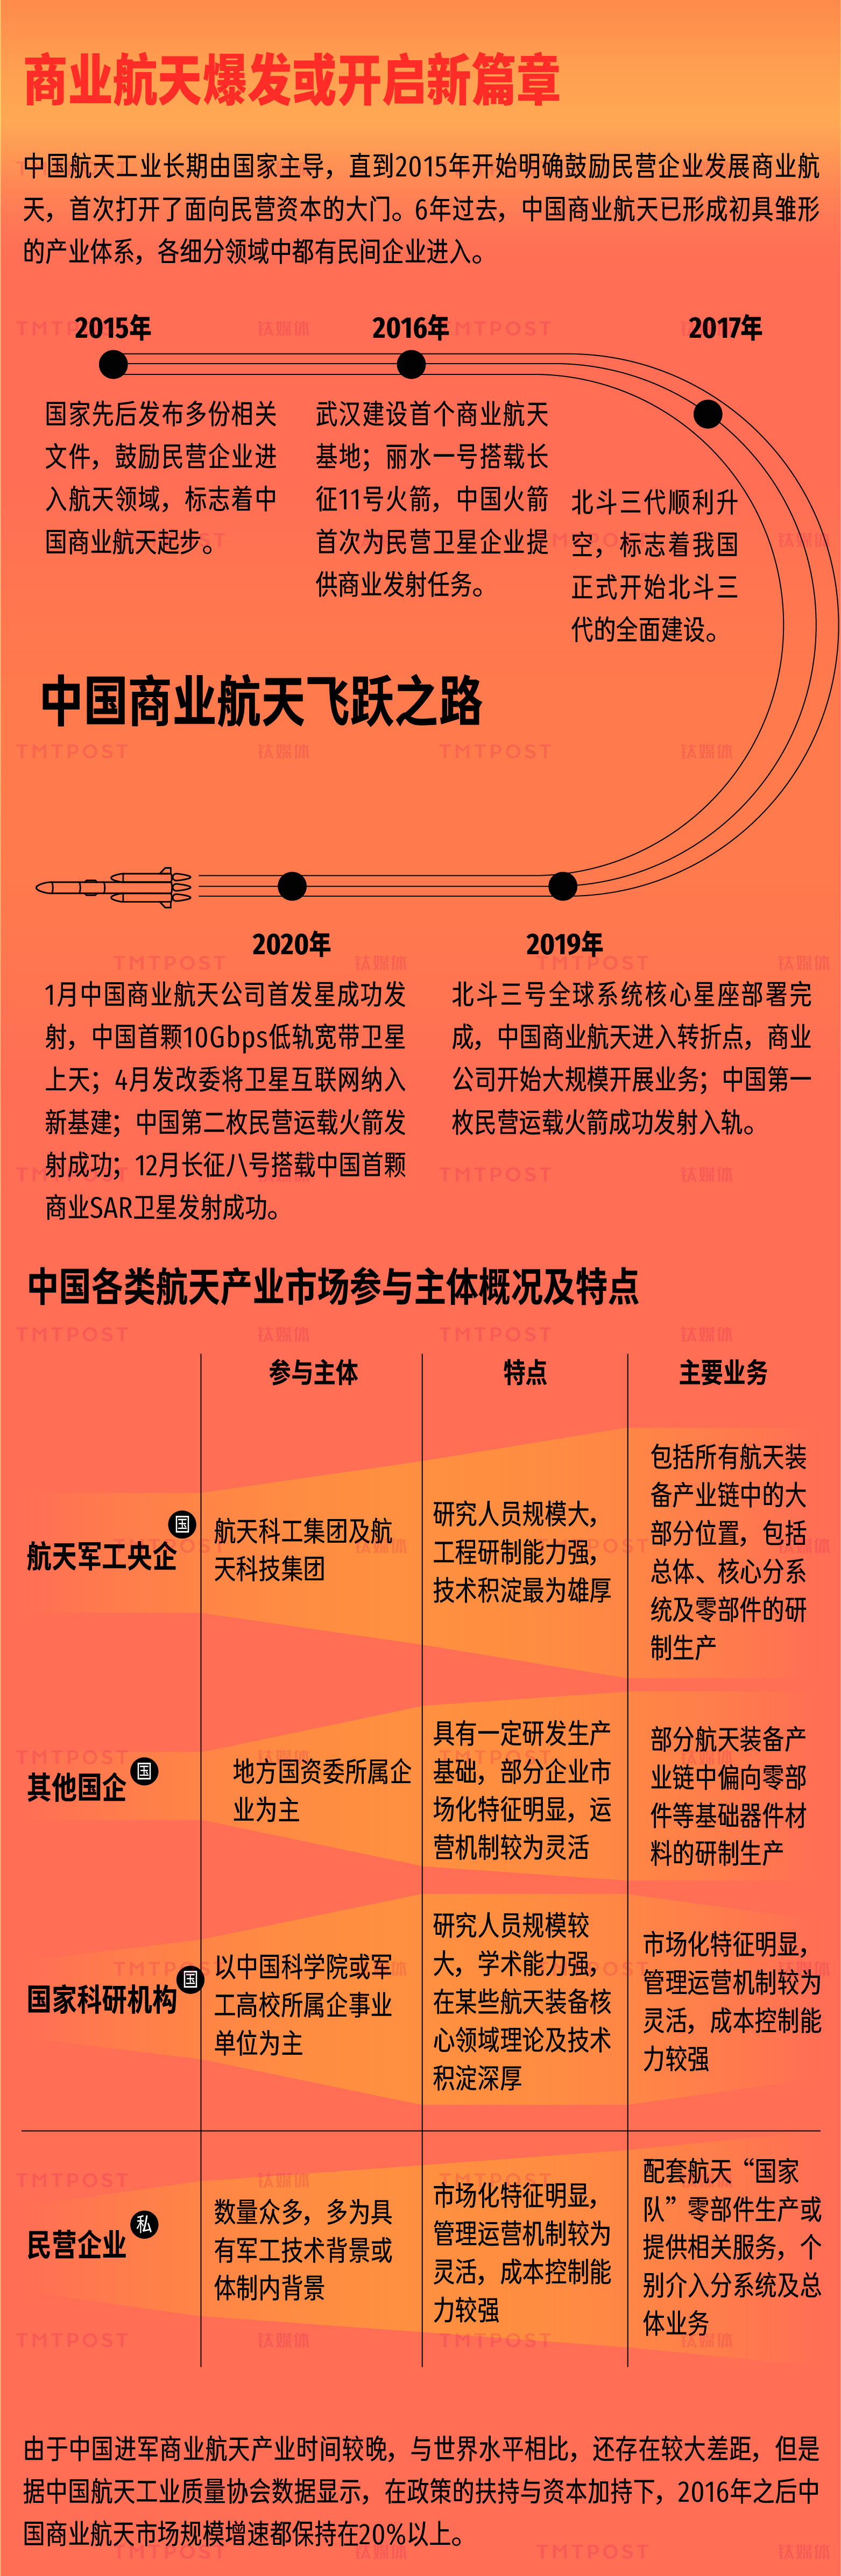 65年飞天梦 一图看懂中国商业航天新征程